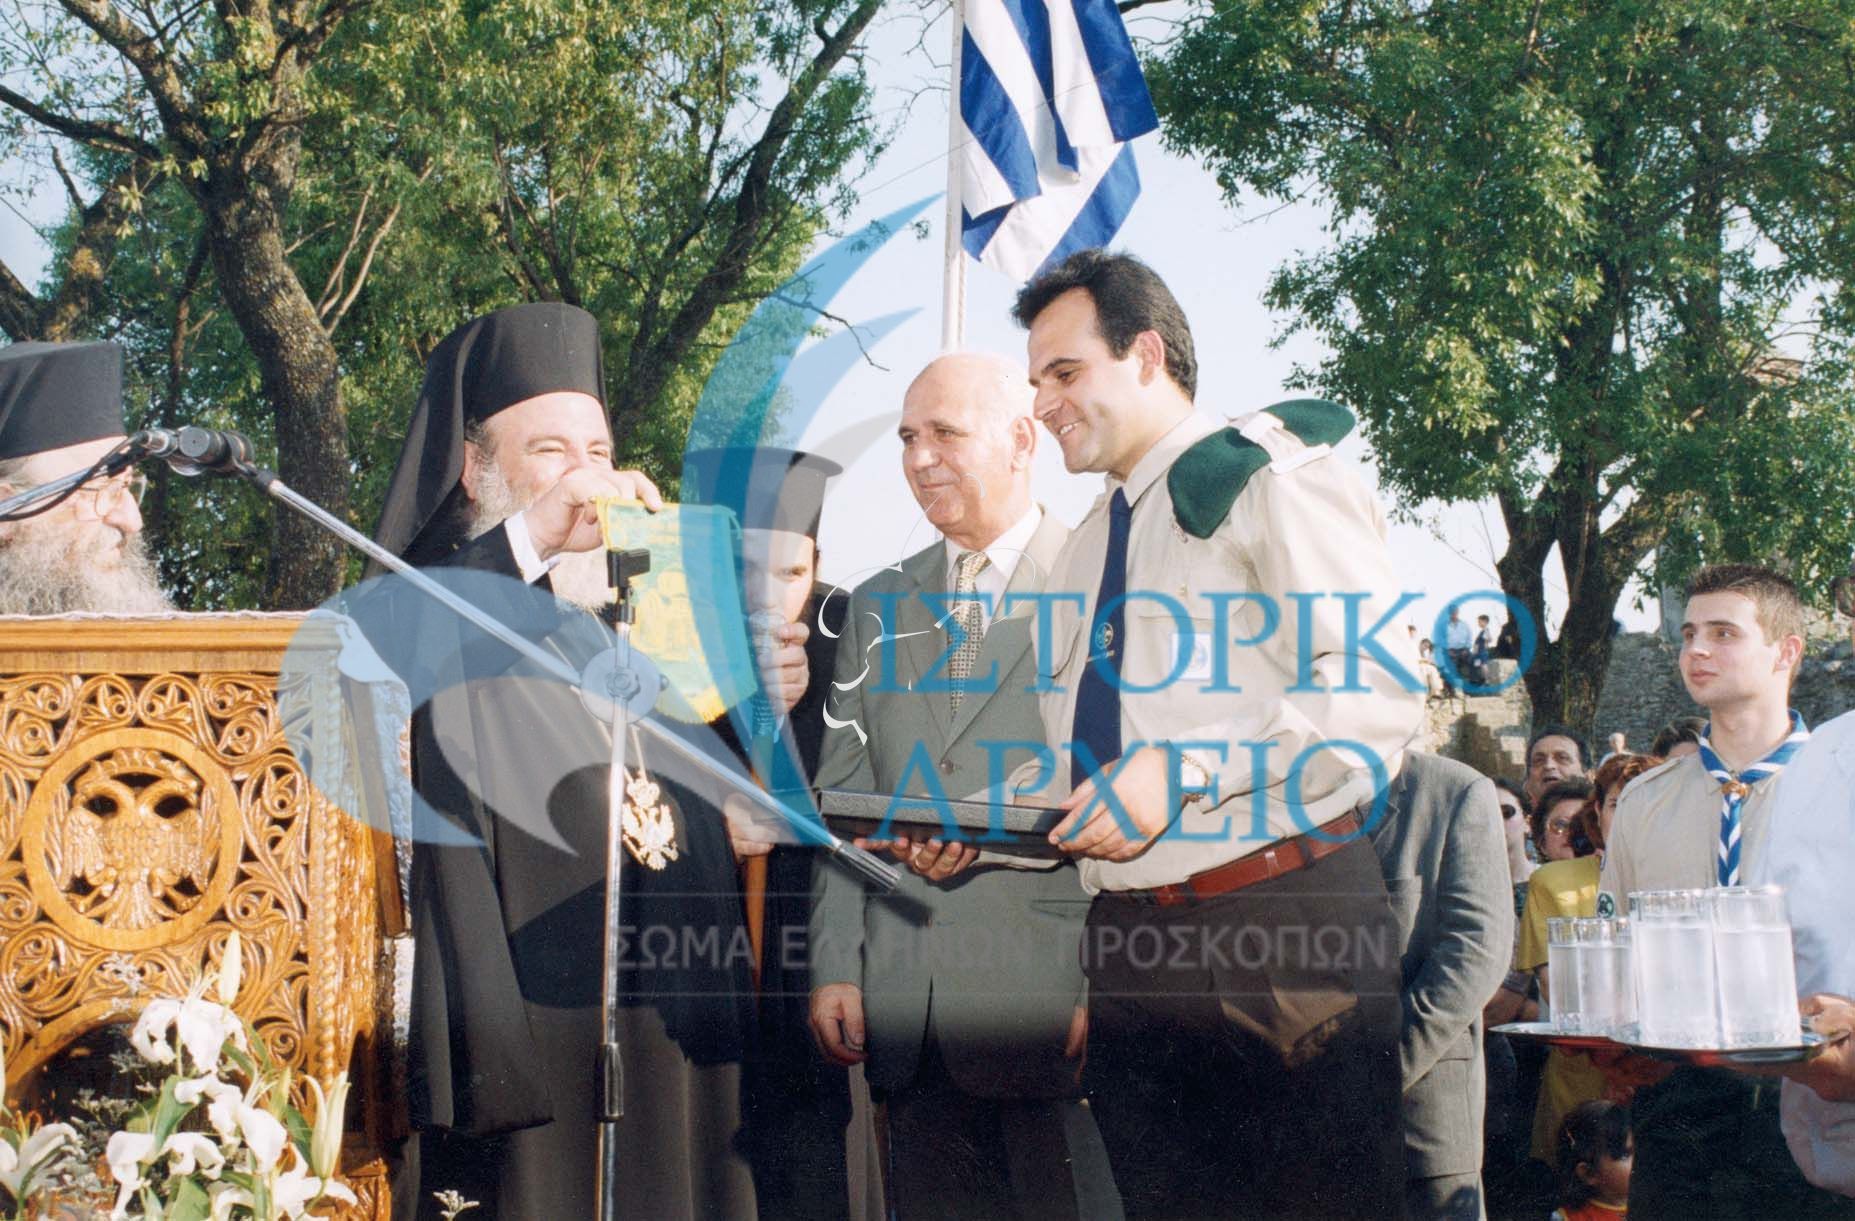 Ο Αρχιεπίσκοπος Αθηνών Χριστόδουλος σε ανταλλαγή αναμνηστικών με τους προσκόπους Φερρών Έβρου το 1999.